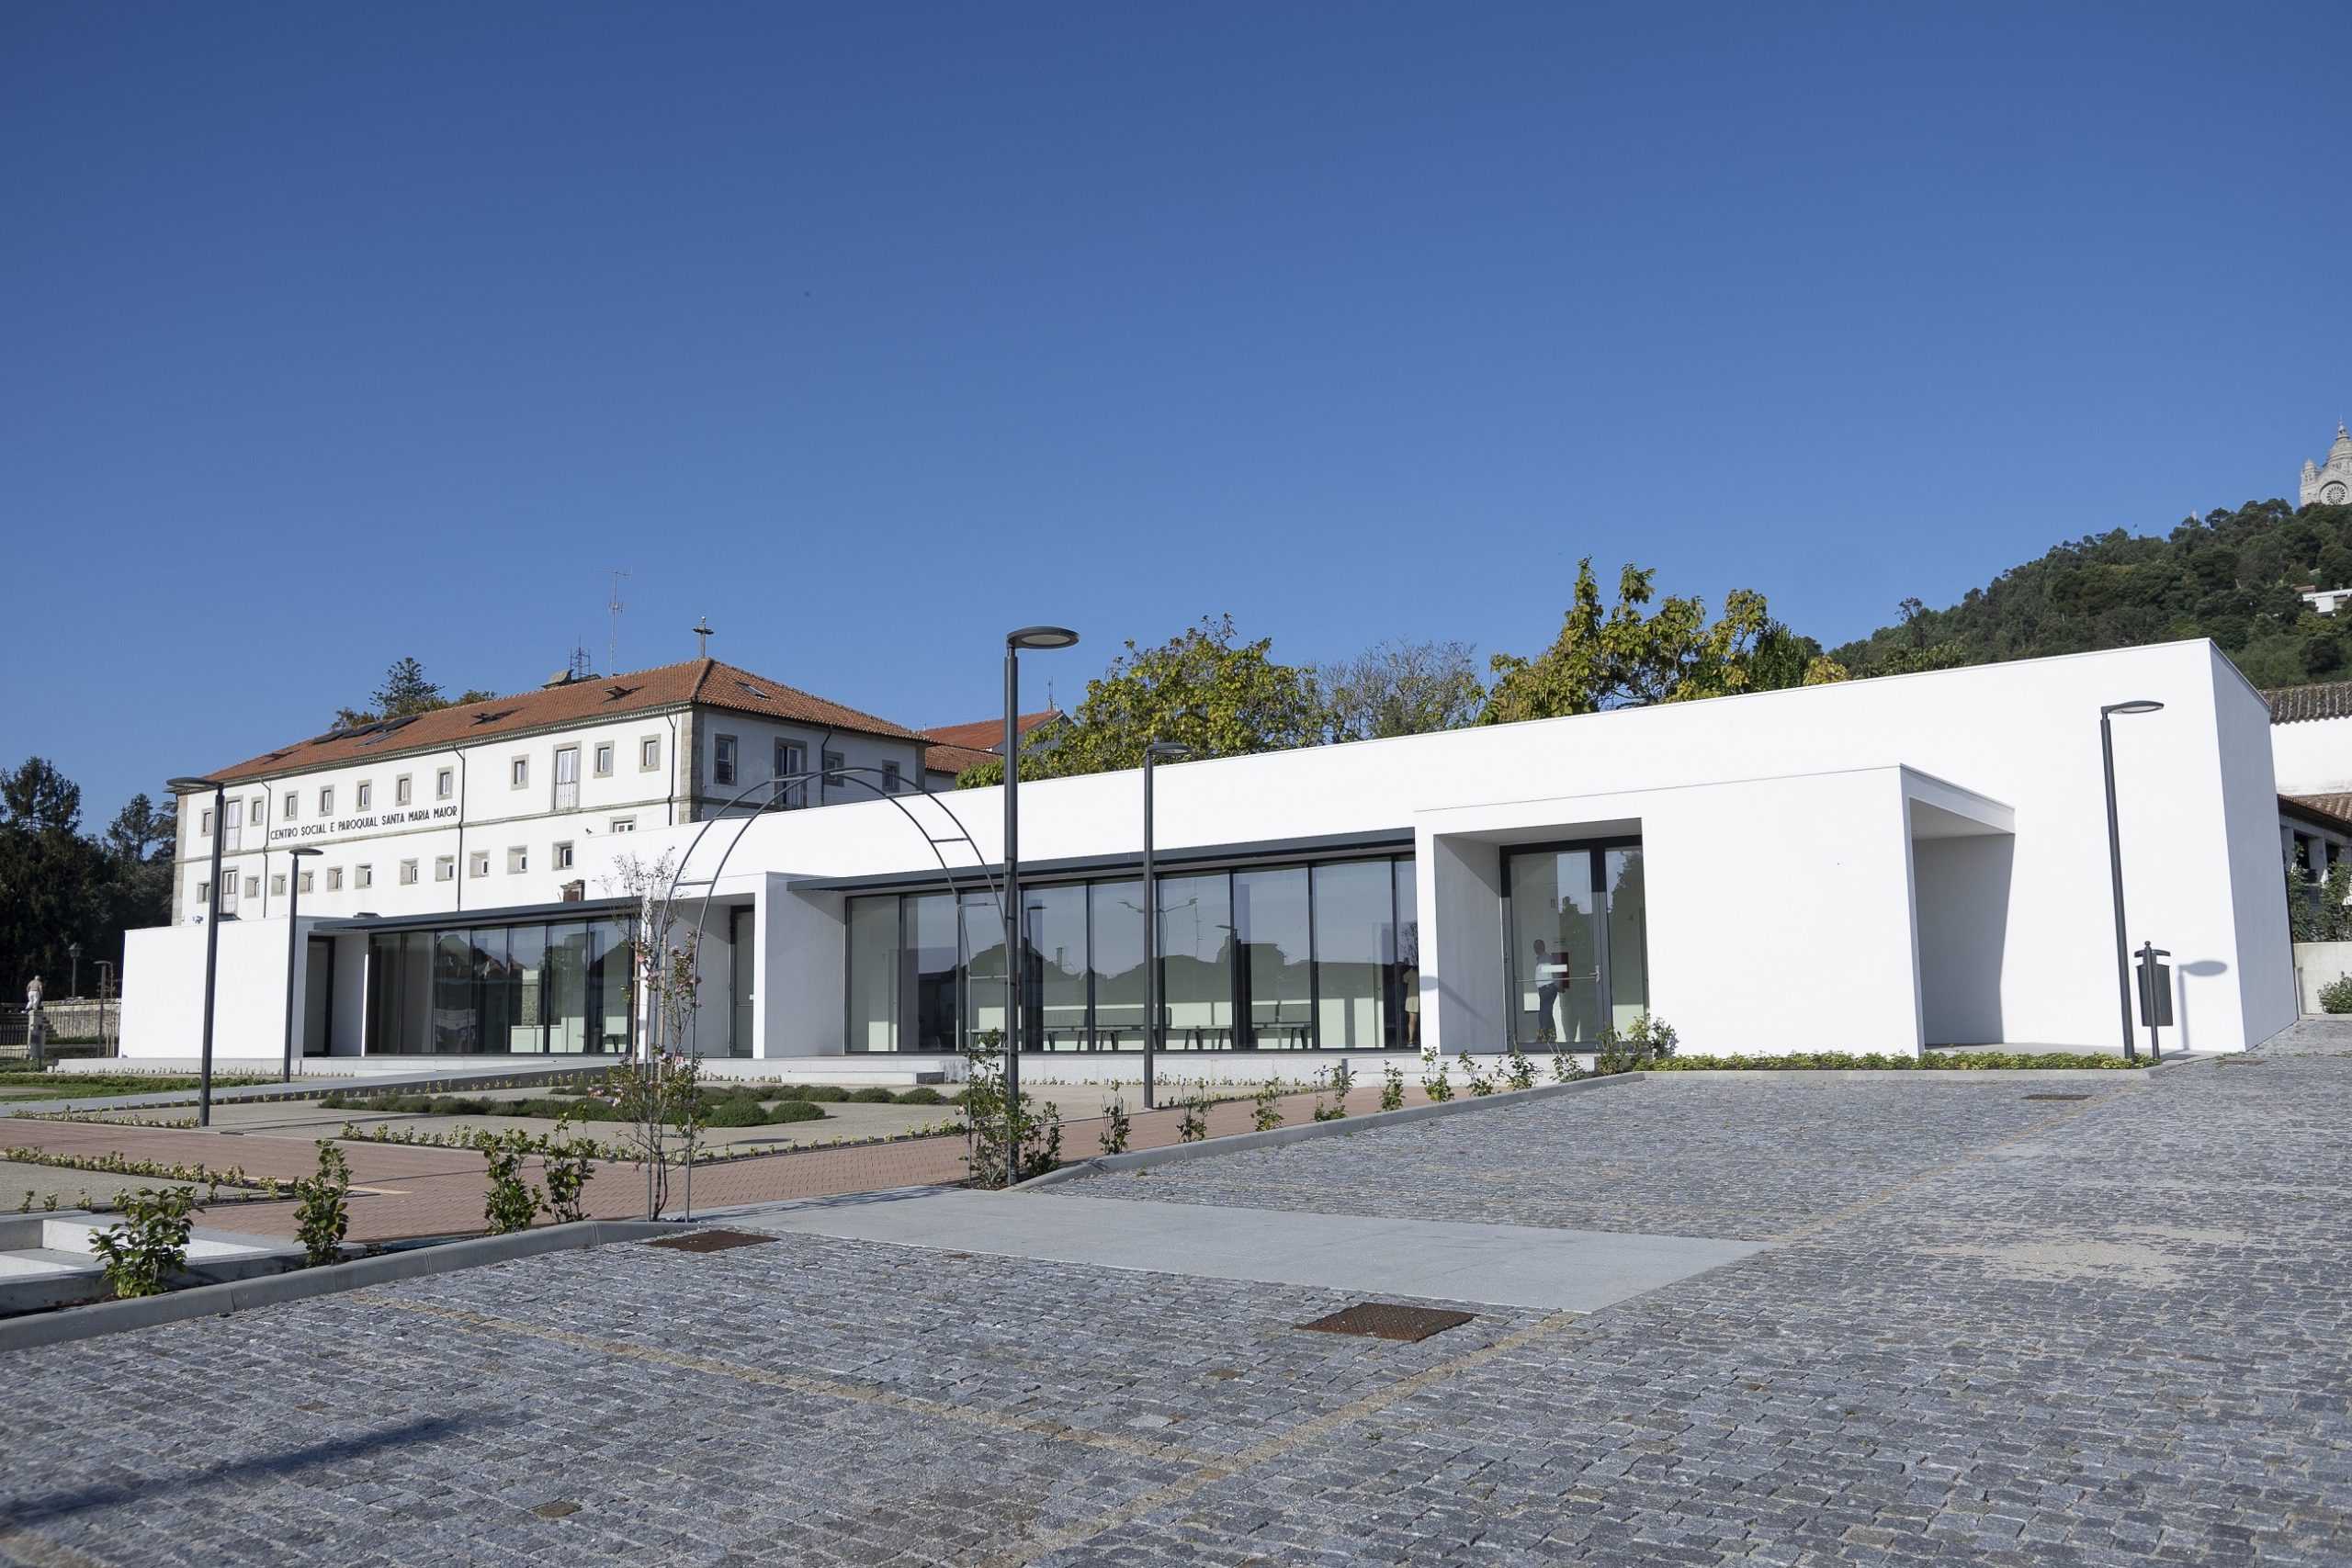 Nova Casa Mortuária de Viana do Castelo “ainda não foi utilizada”